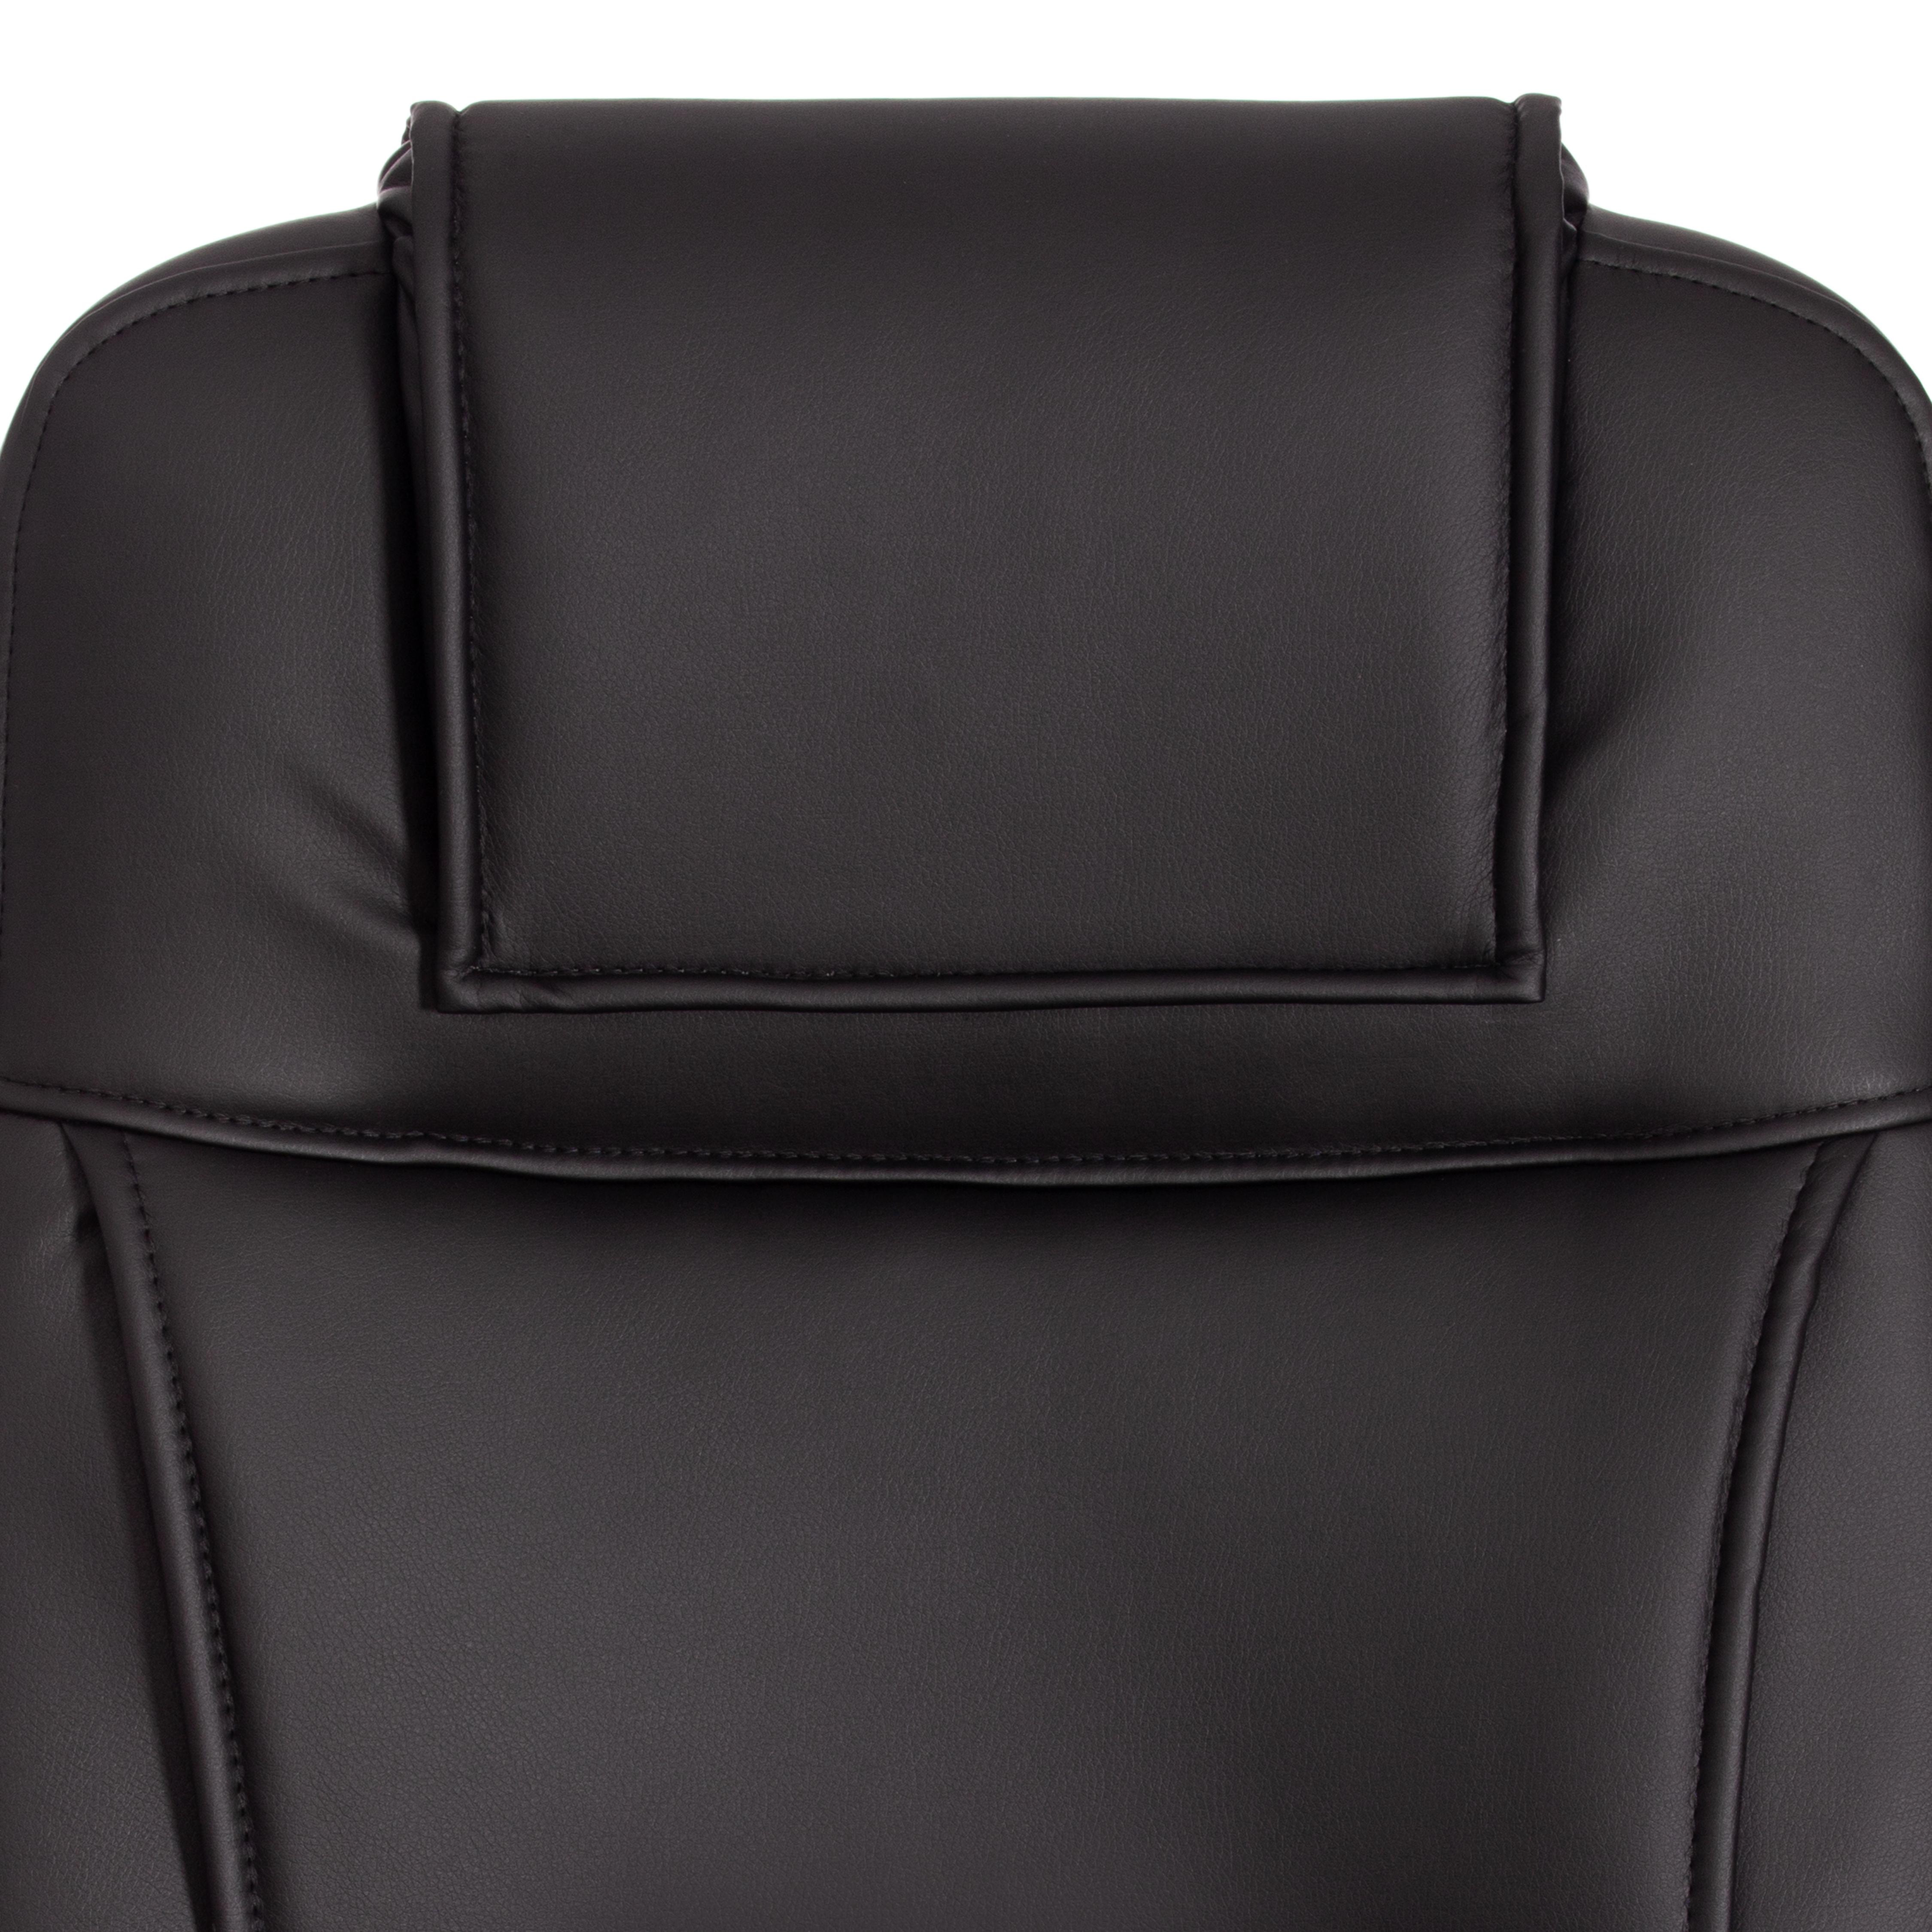 Кресло BERGAMO хром (22) кож/зам, черный, 36-6